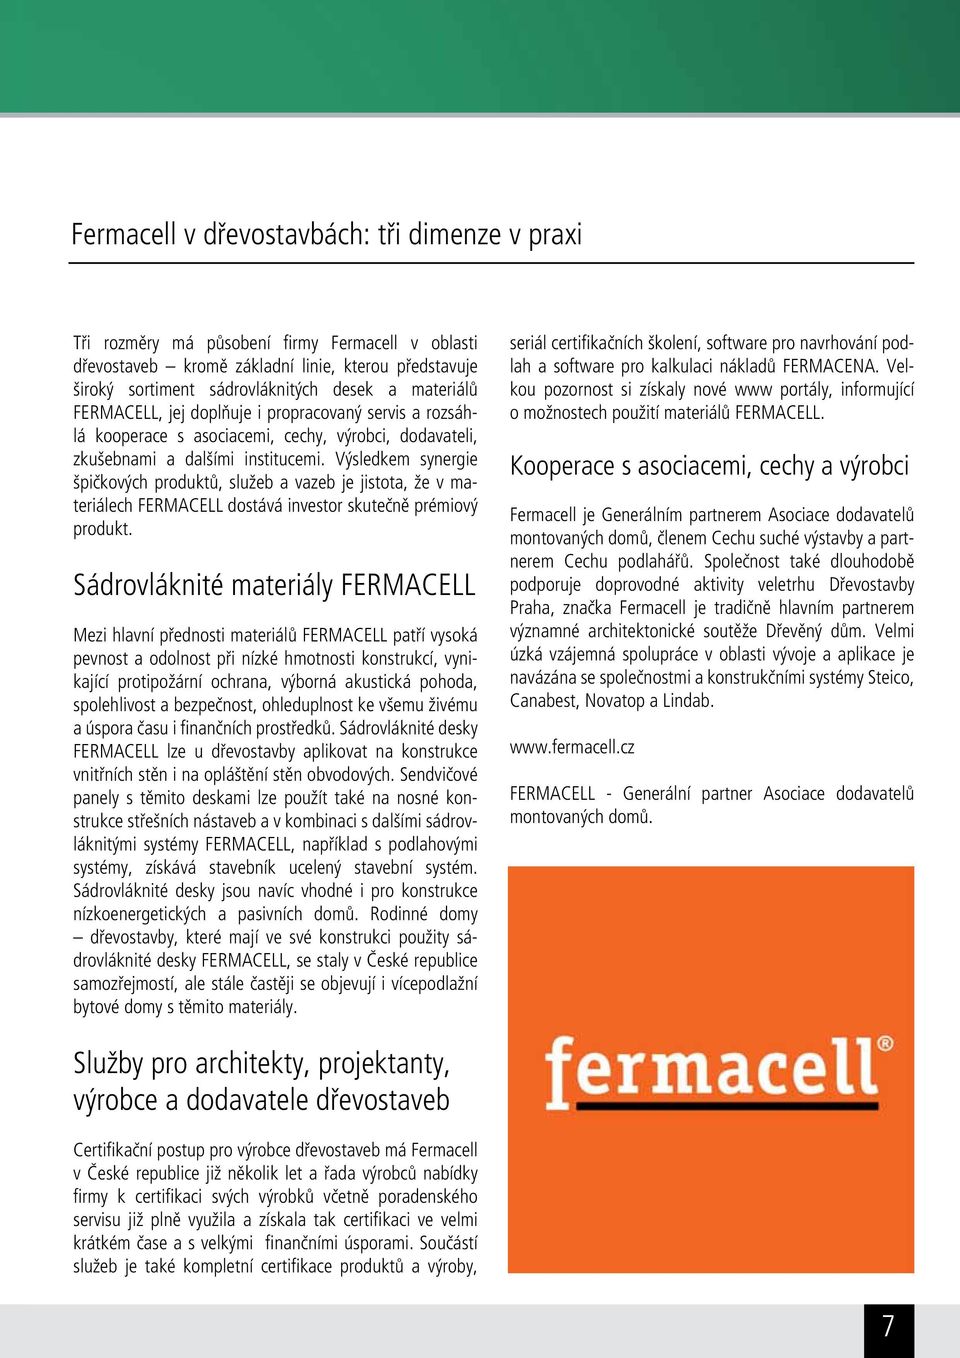 Výsledkem synergie špičkových produktů, služeb a vazeb je jistota, že v materiálech FERMACELL dostává investor skutečně prémiový produkt.